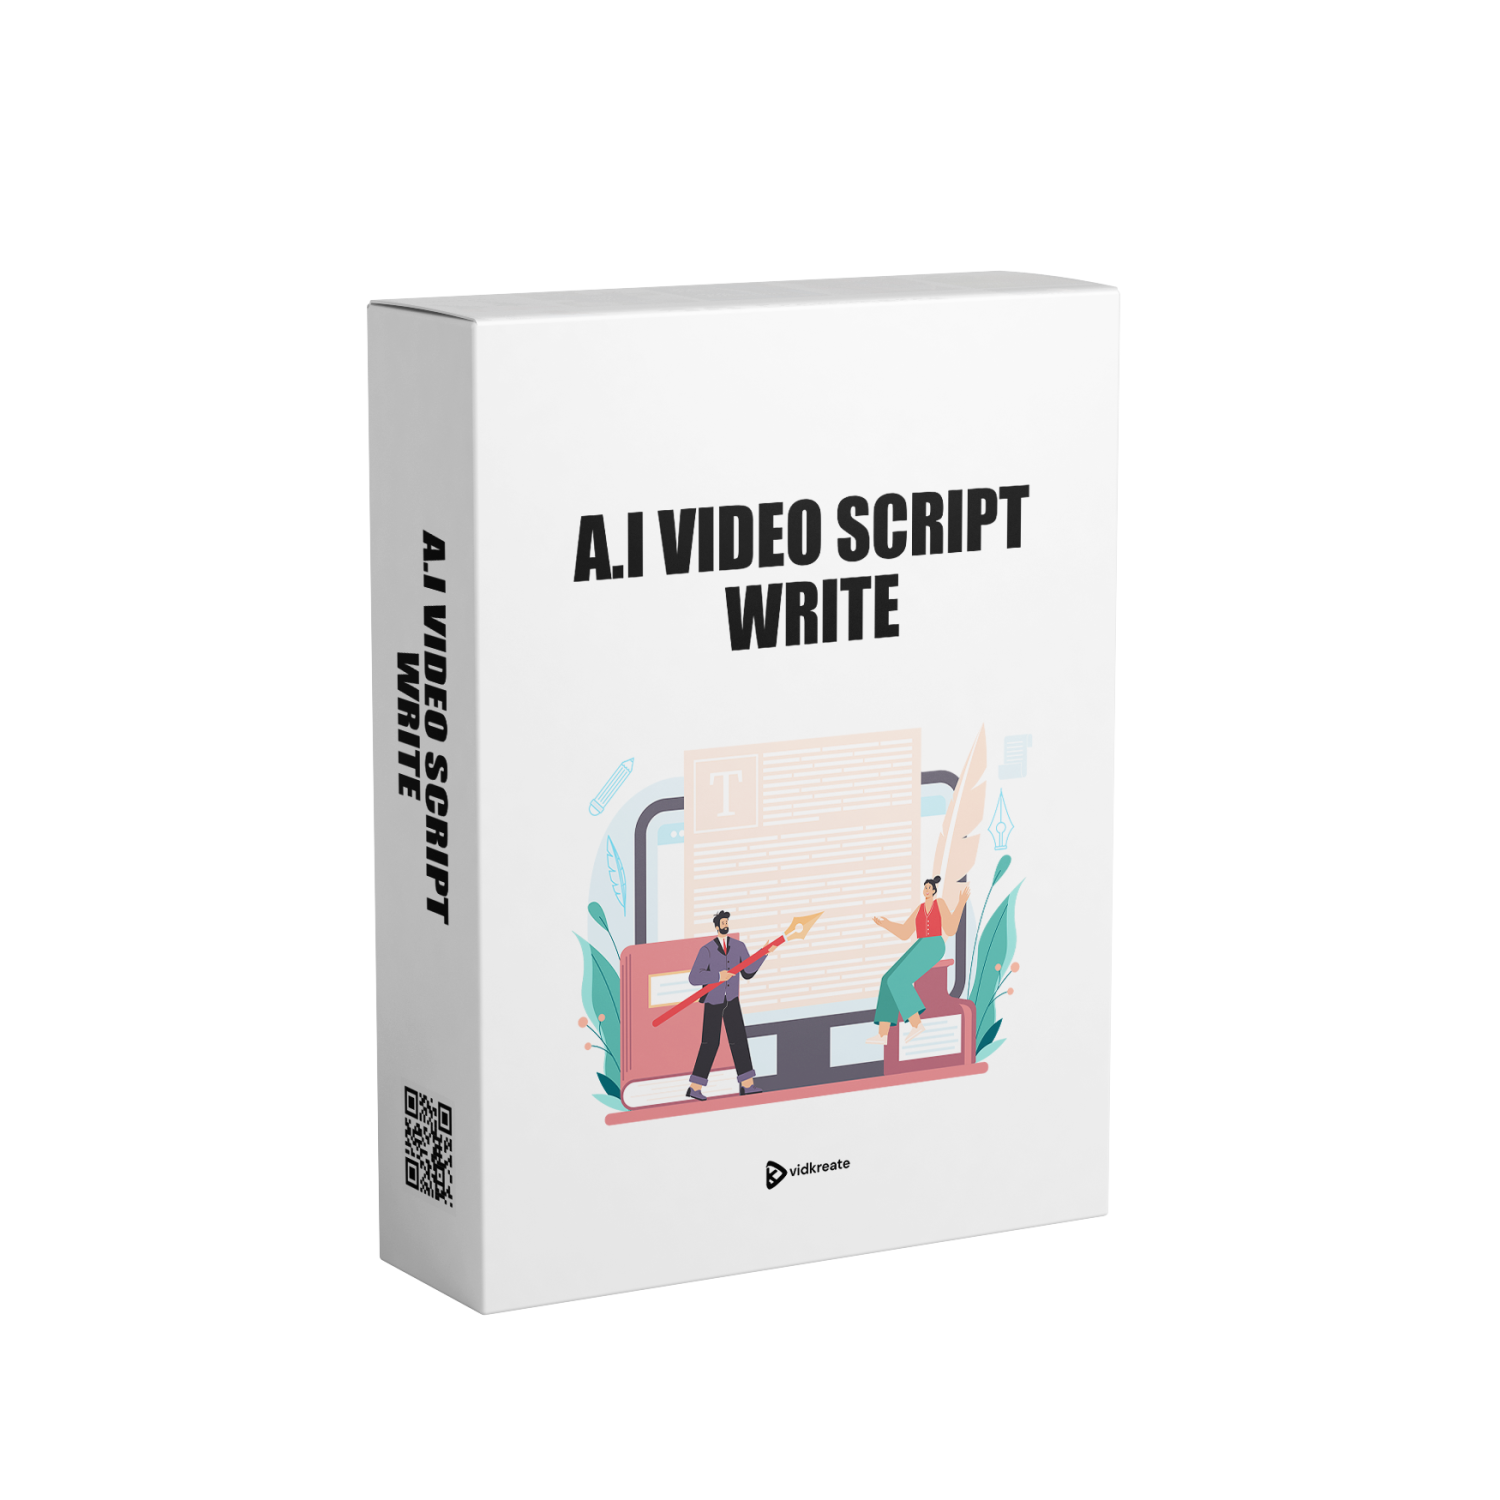 A.I Video Script Write